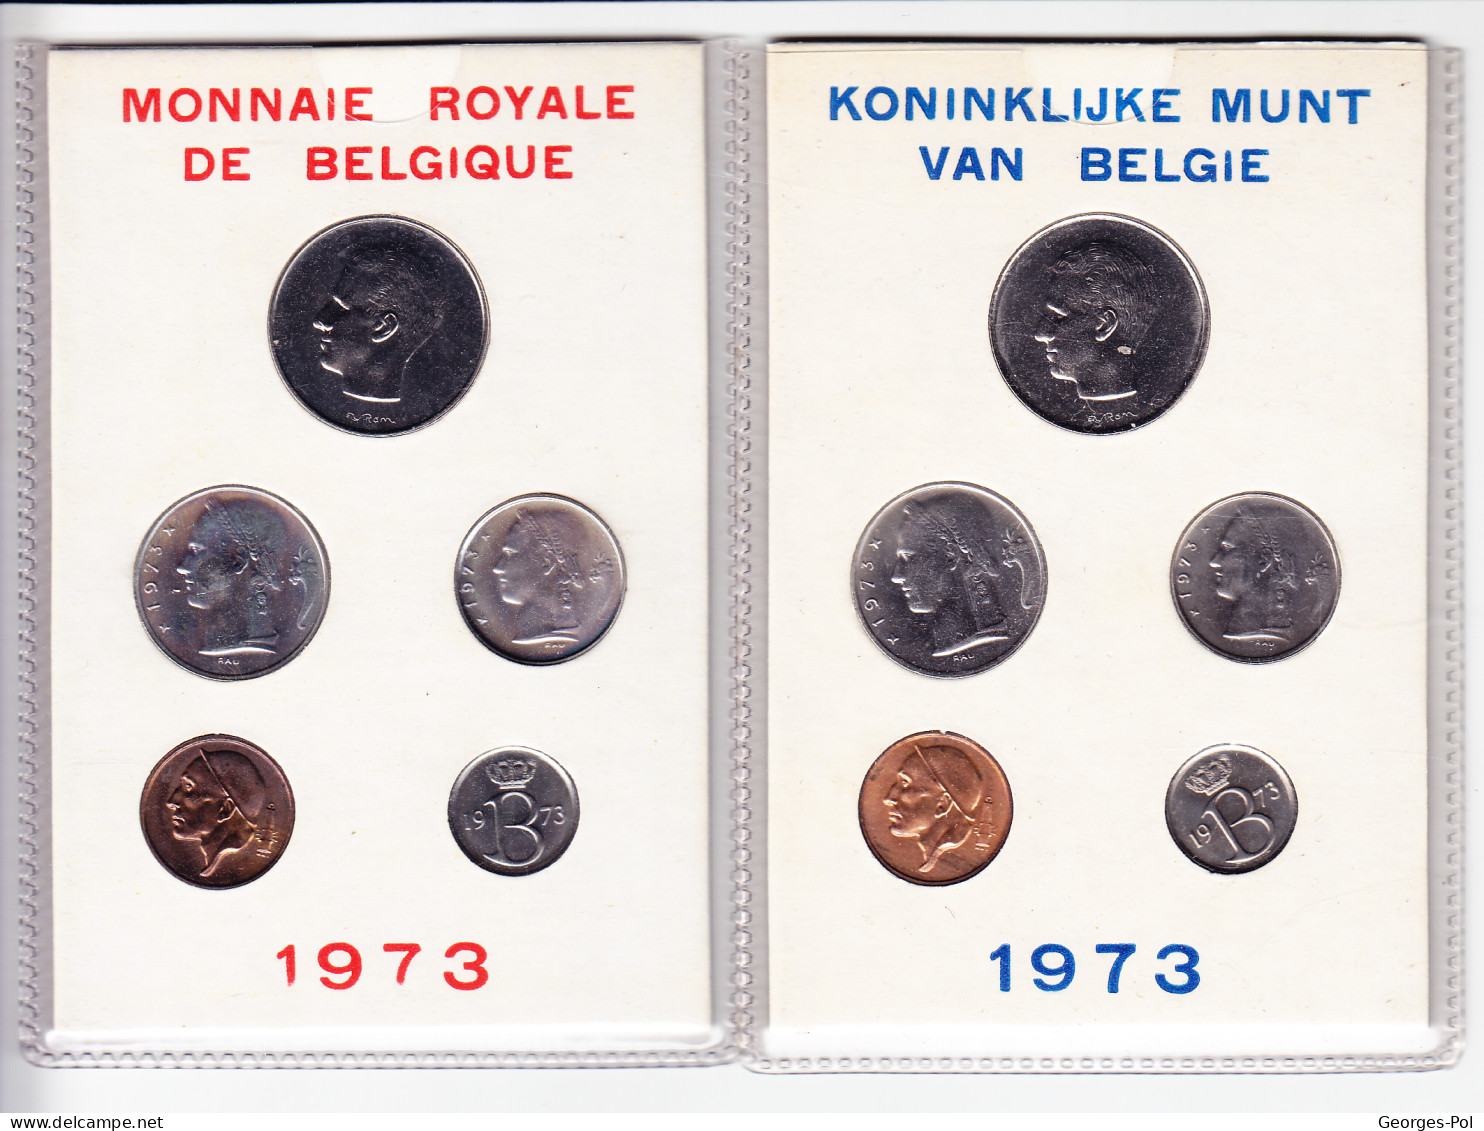 Monnaie Royale De Belgique 1973 Koninklijke Munt Van België. 2 Cartes De 5 Pièces Non Circulées - FDC, BU, Proofs & Presentation Cases